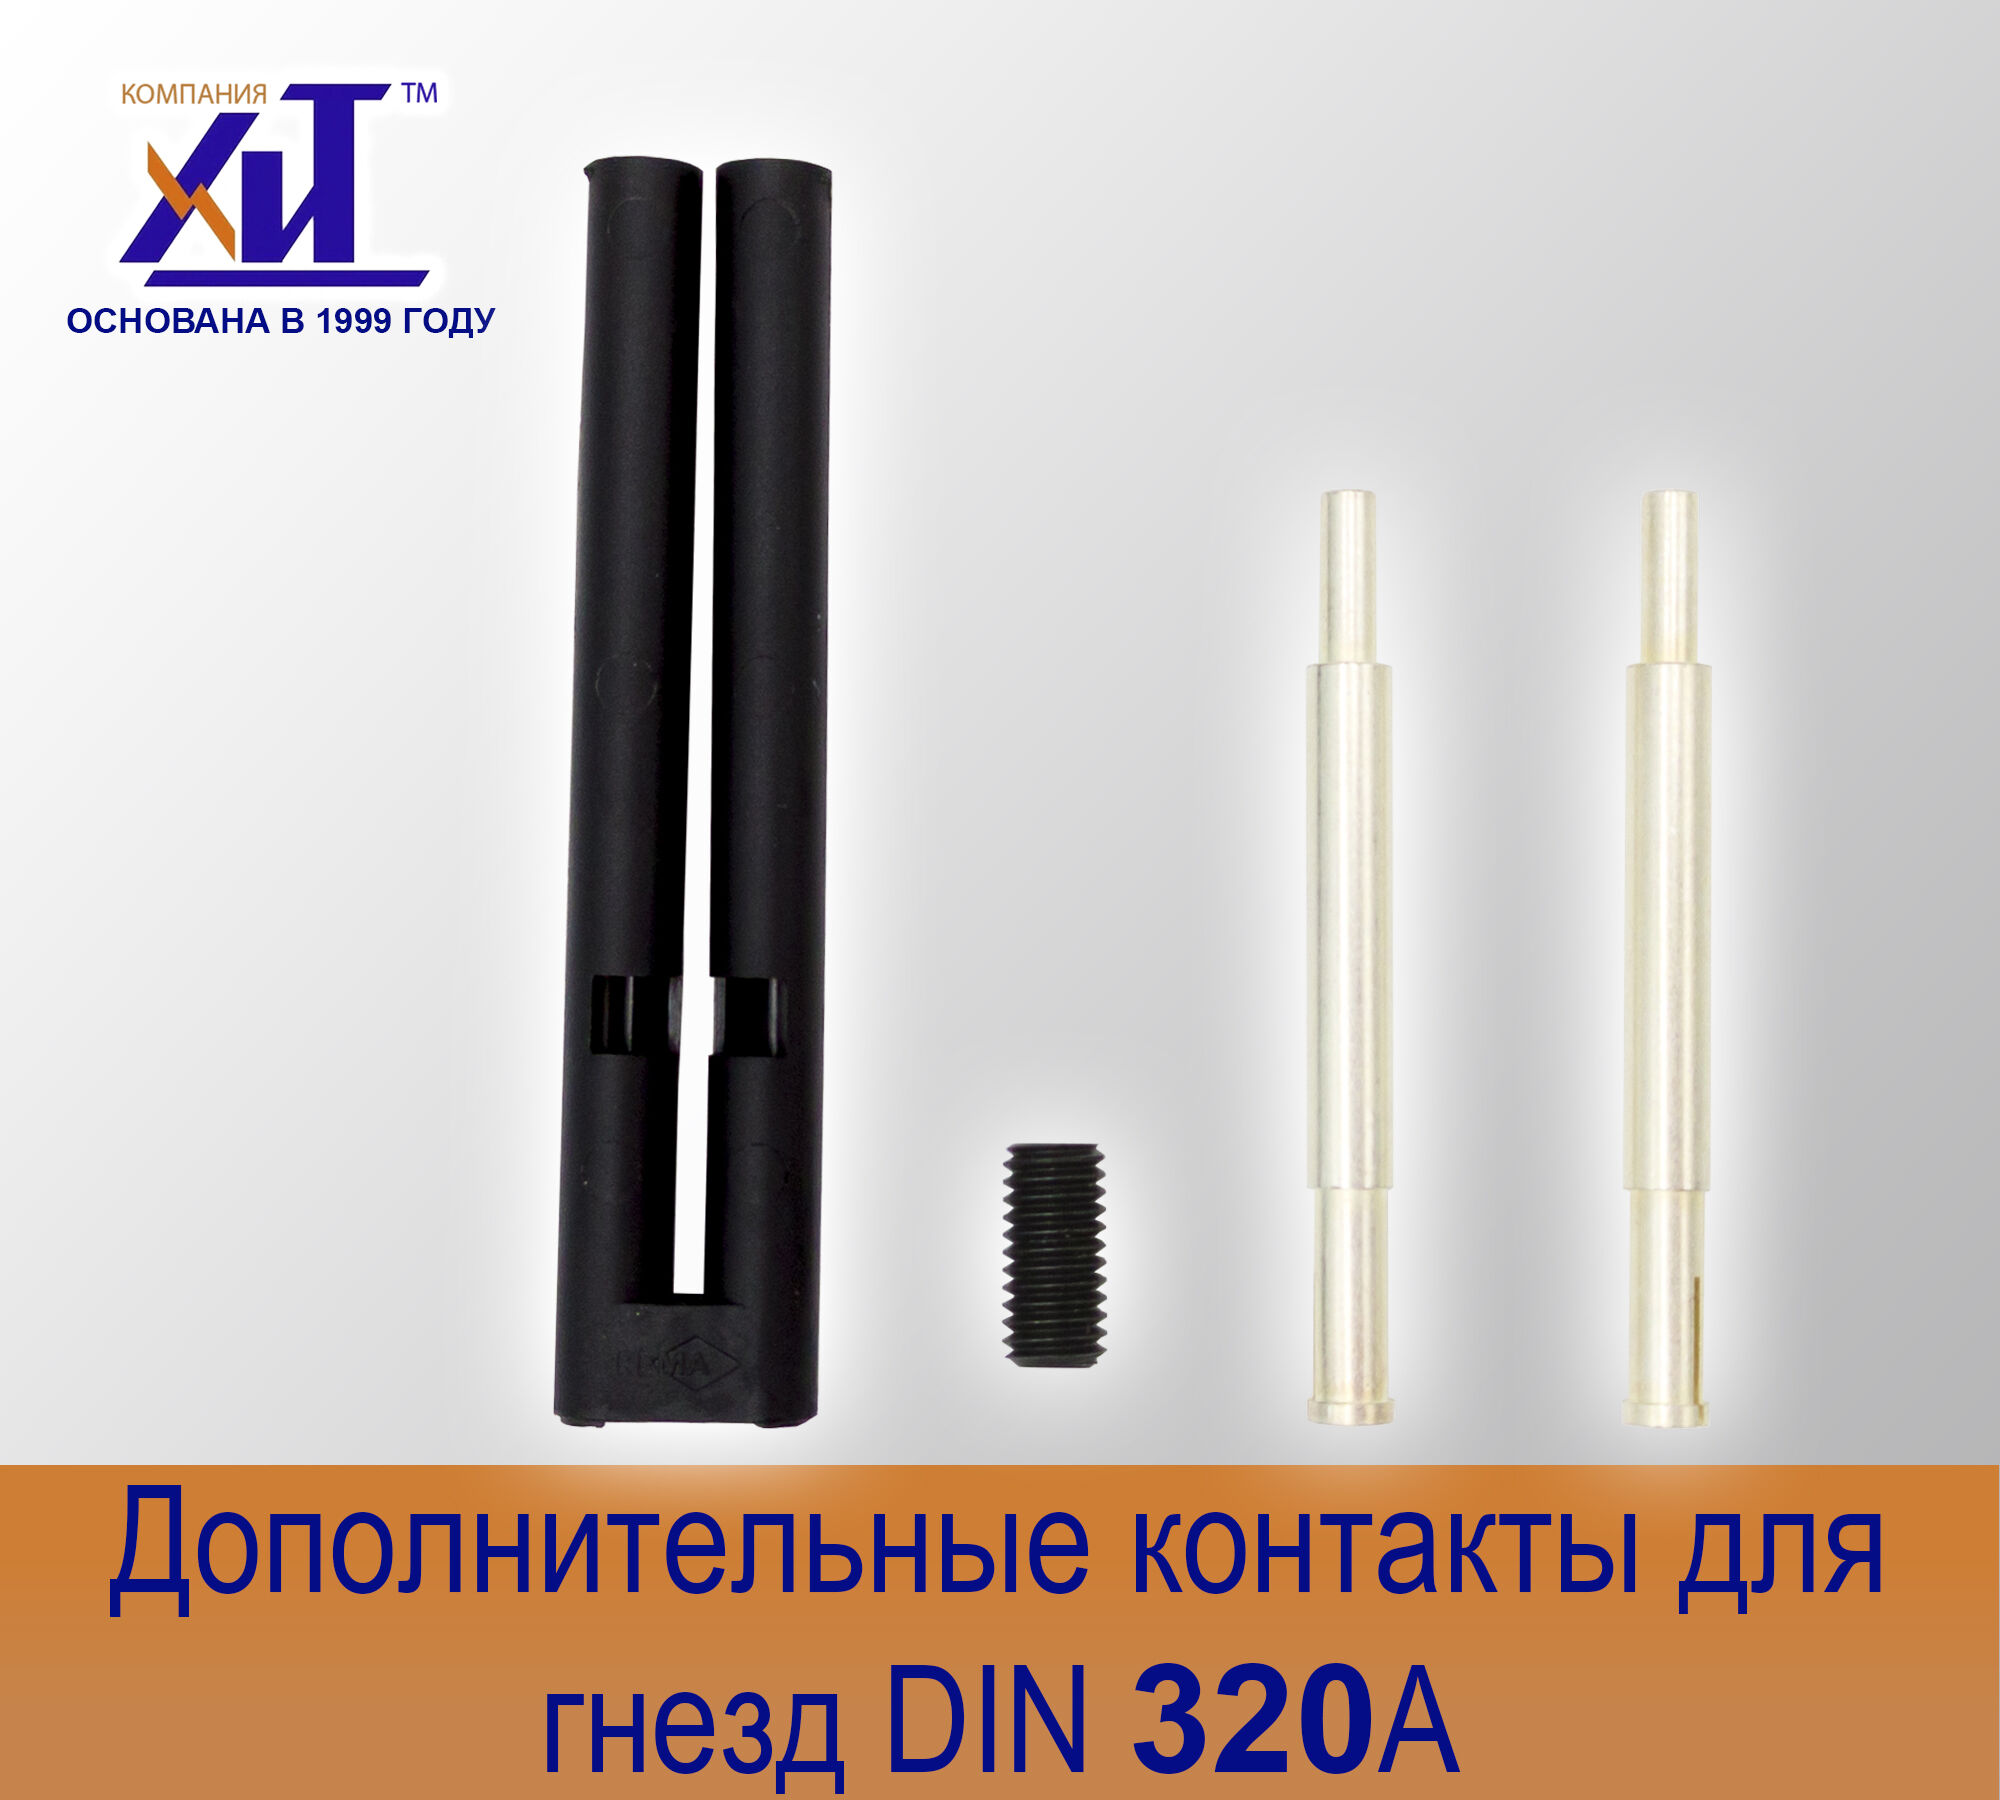 Комплект направляющих контактов DIN 320 А для гнезд